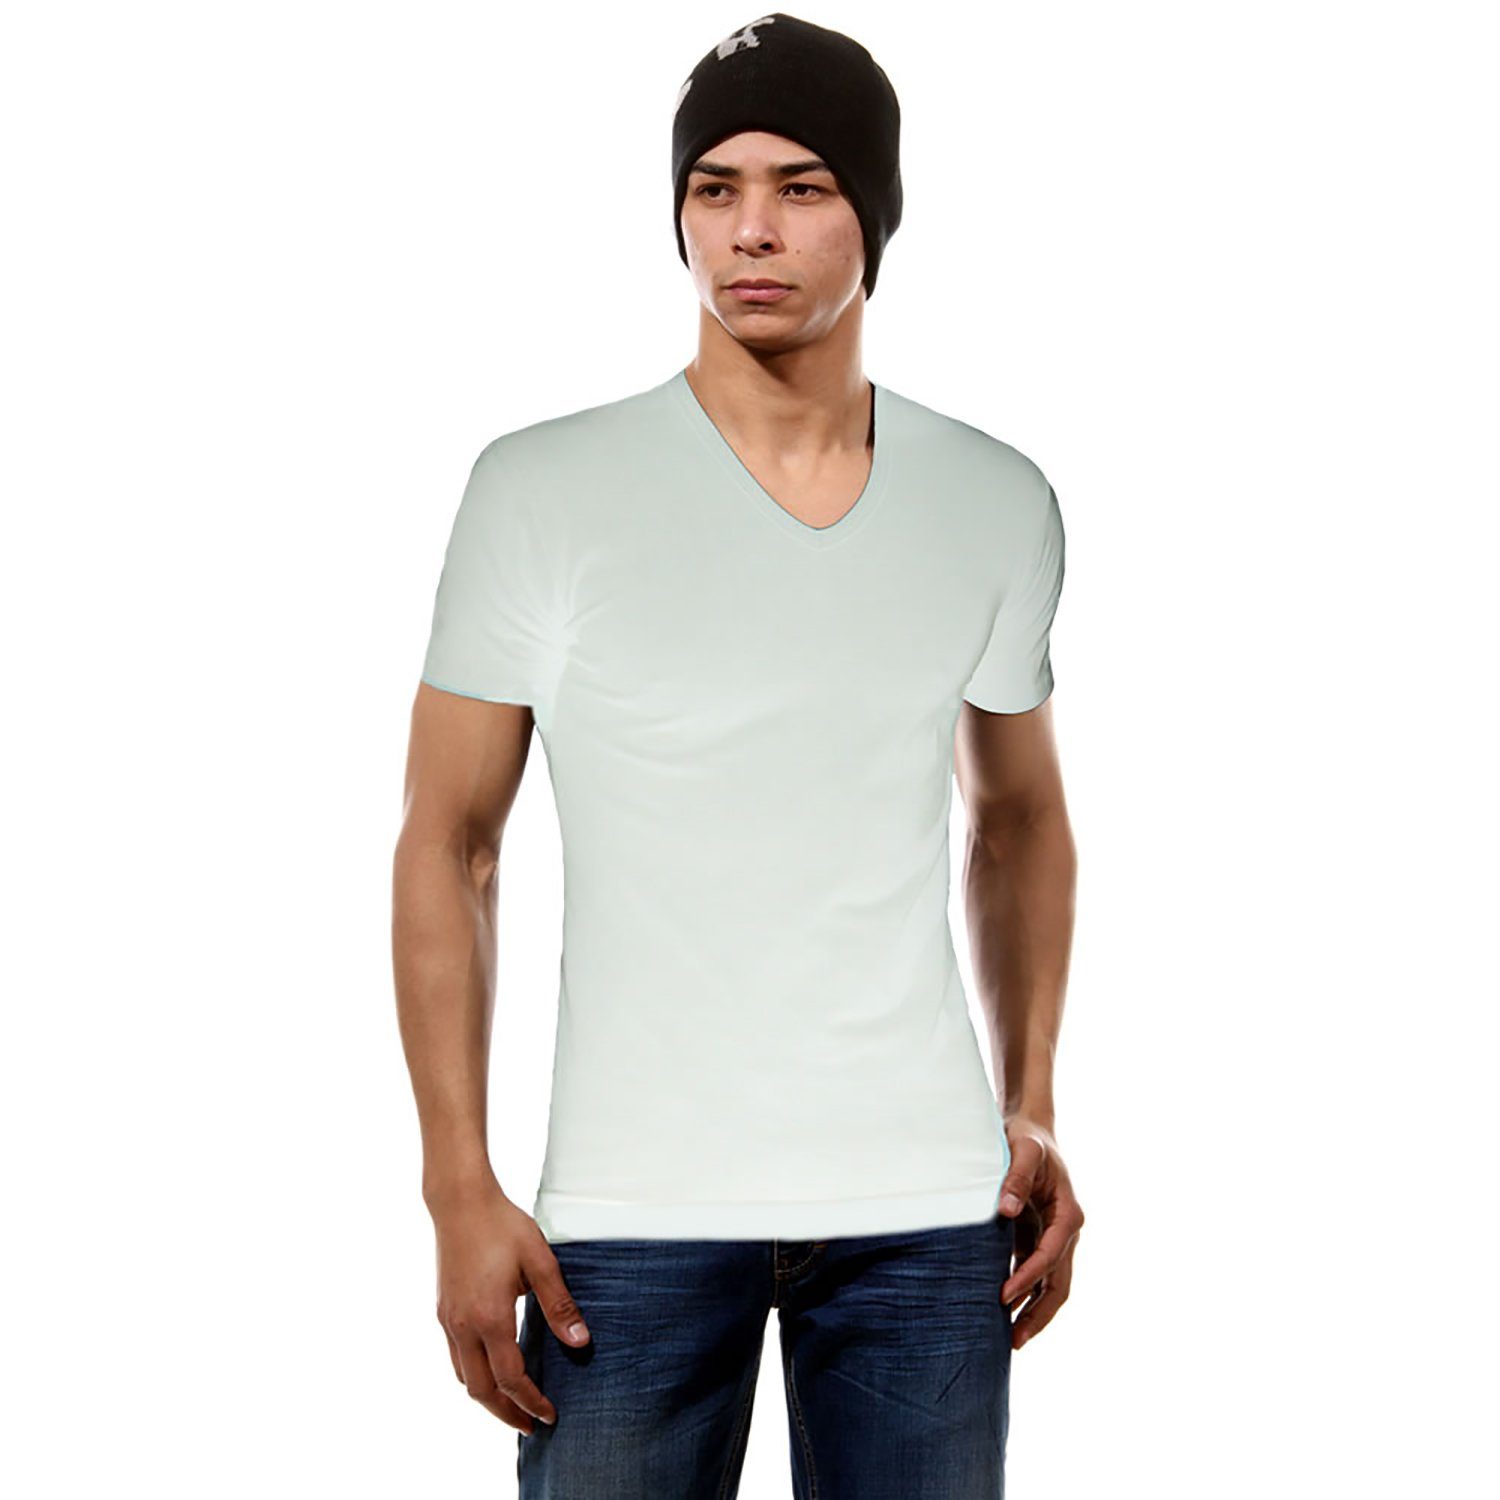 Sympatico T-Shirt V-NECK Herren Shirt Super Soft 3er Pack 3 Stück ein Preis (3-er Packung, Sparpack, 3er Pack, 3 Stück ein Preis)